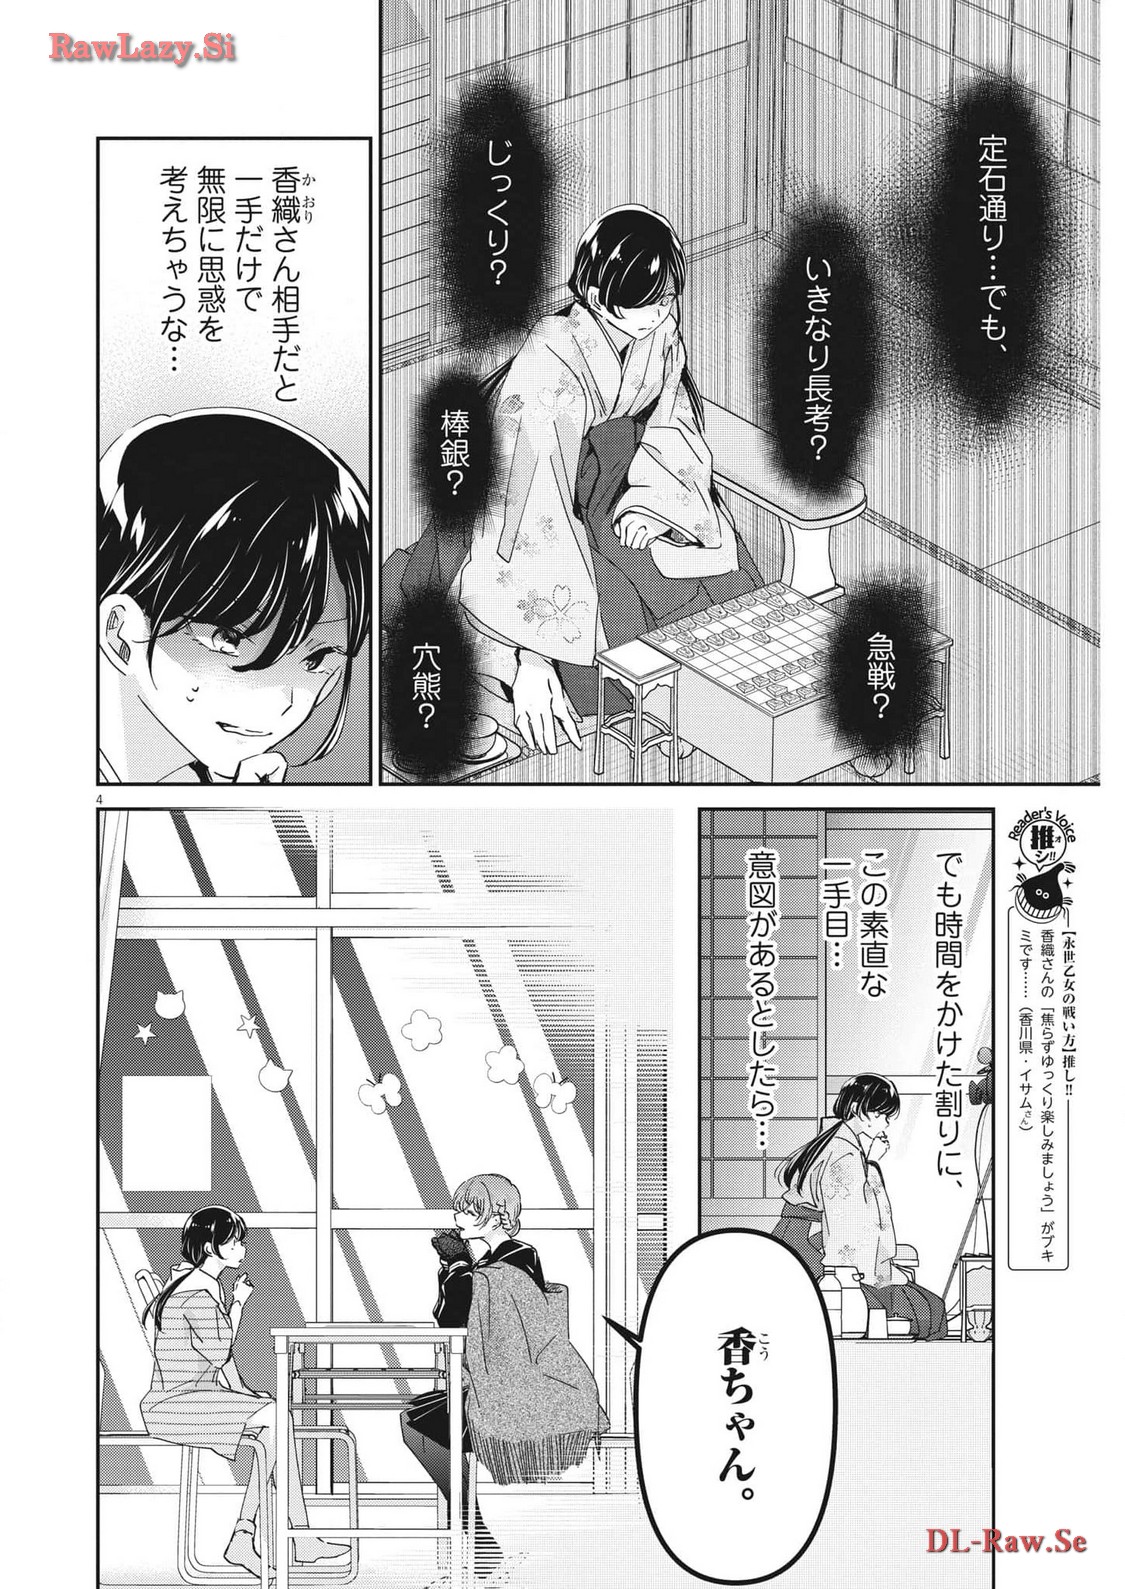 Eisei Otome no Tatakai-kata - Chapter 93 - Page 4